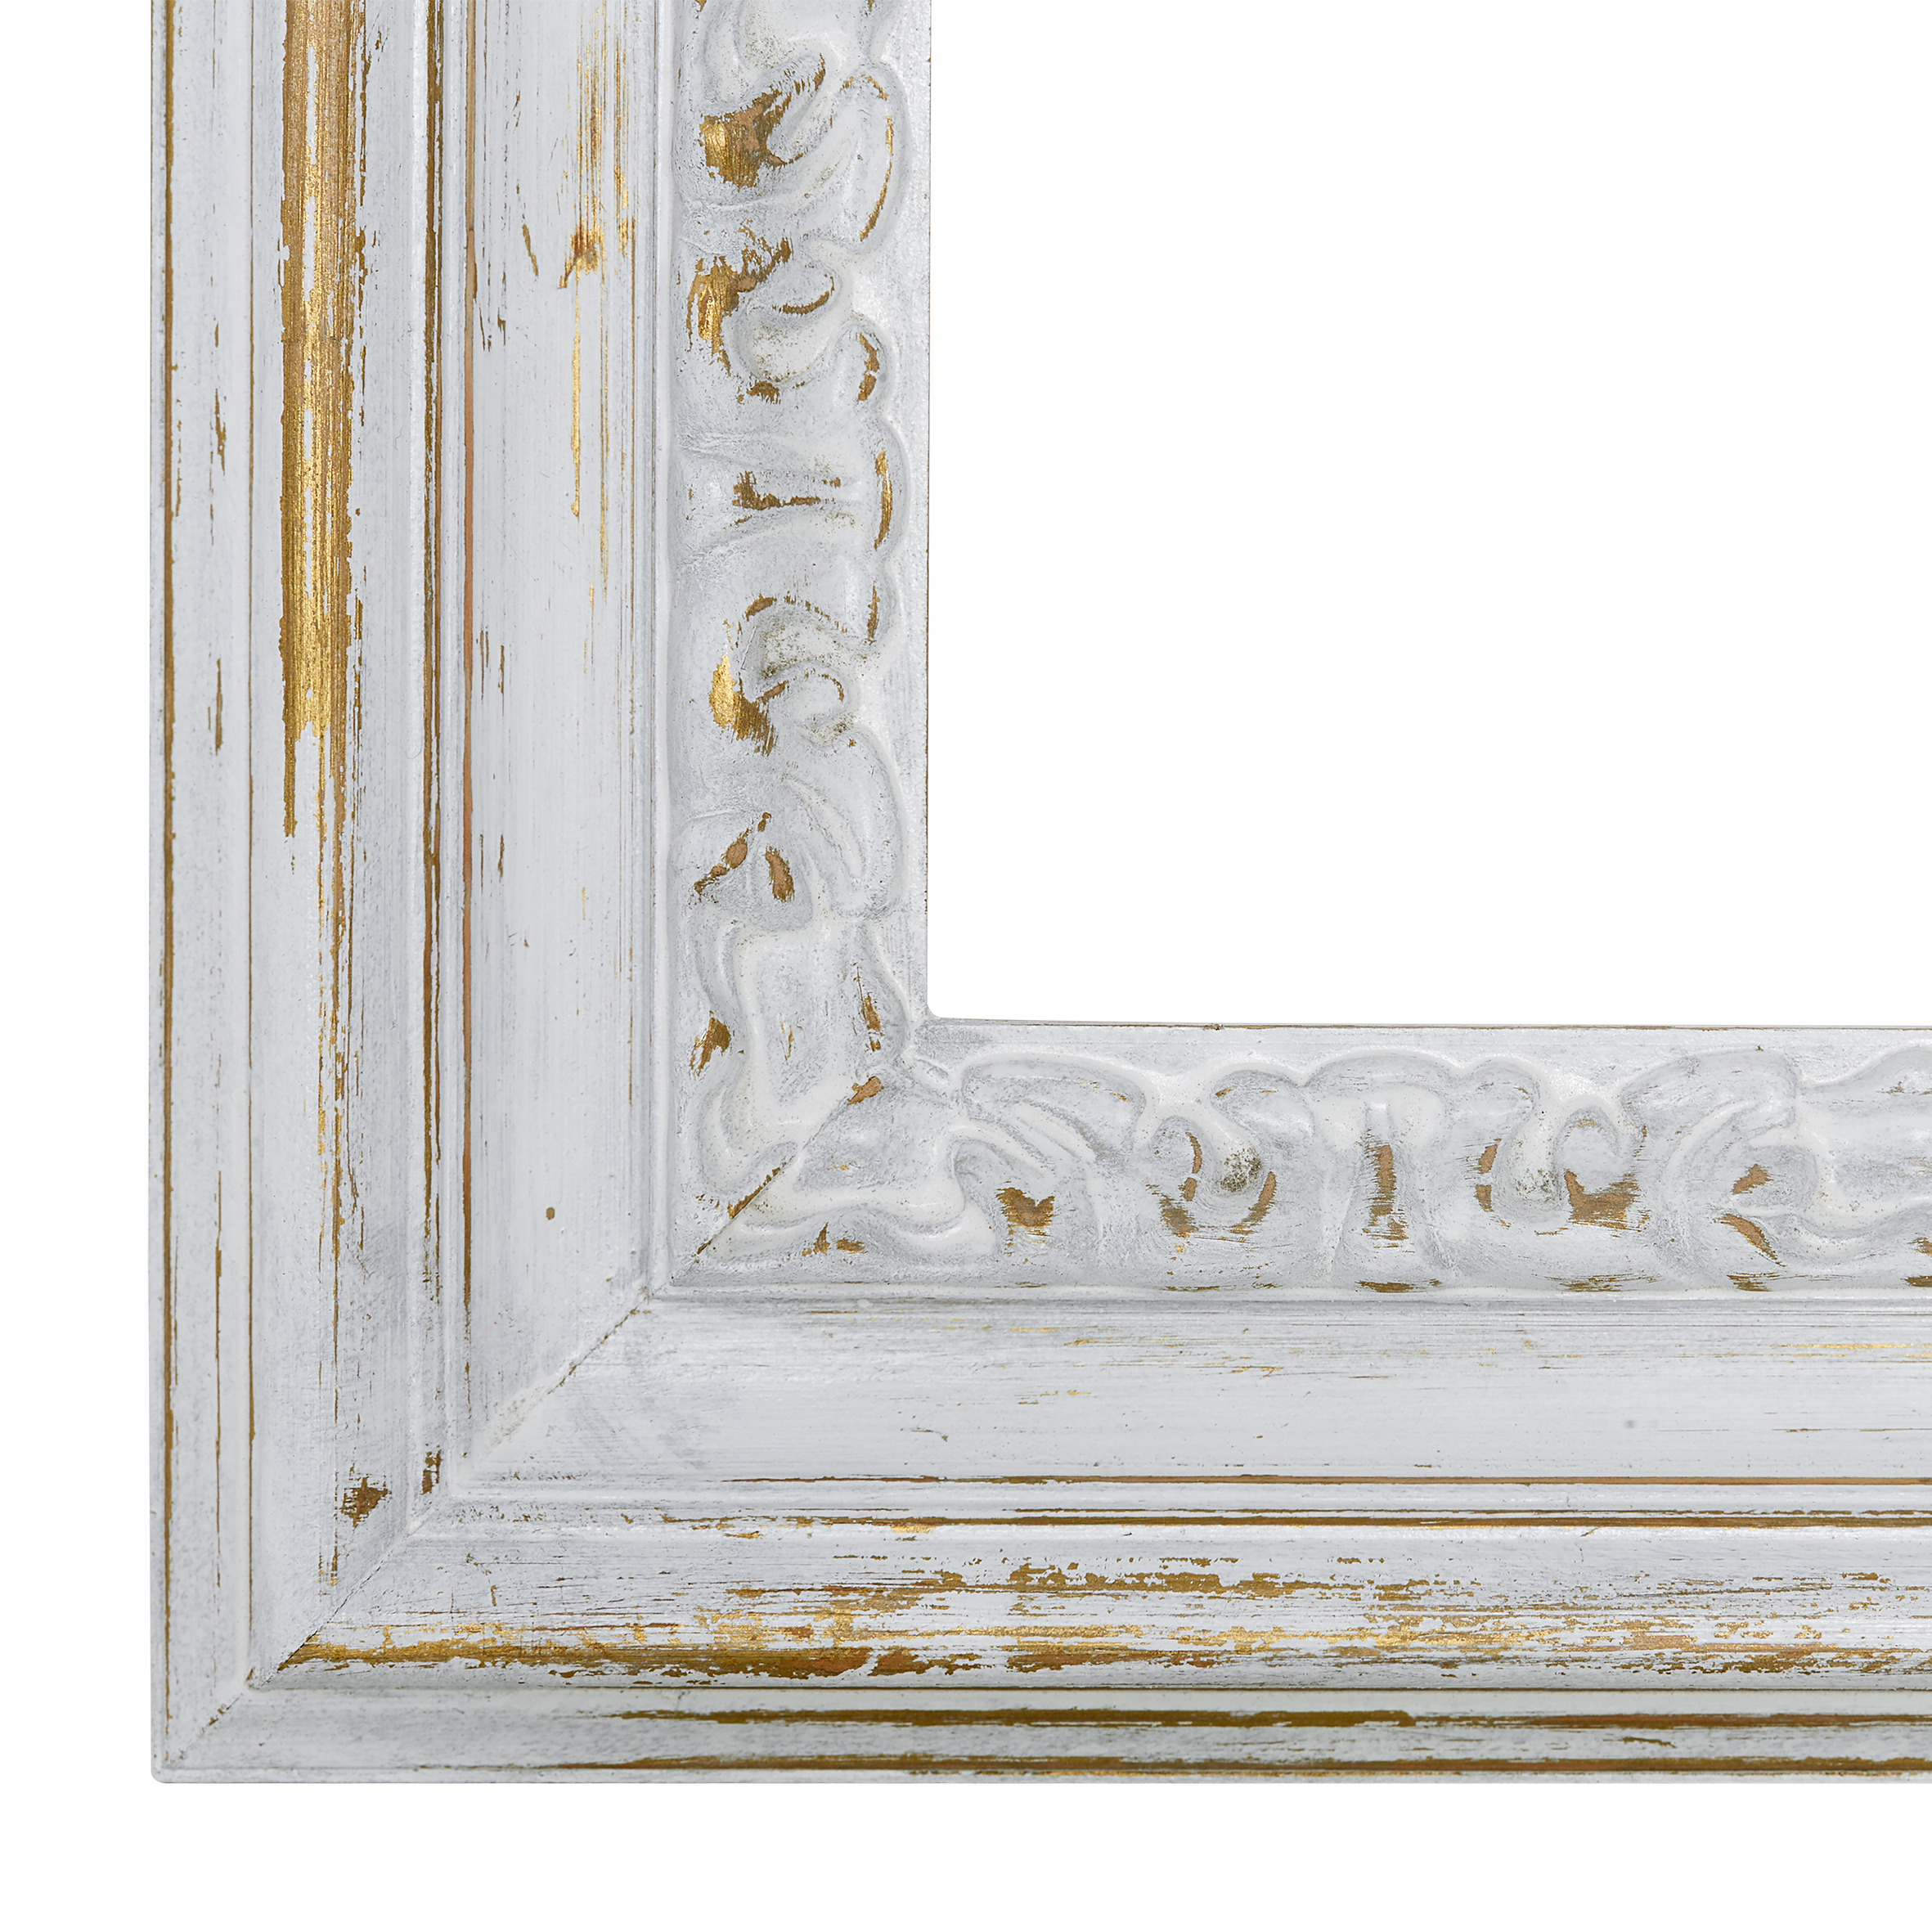 Wandspiegel Modell Nimes, Farbe. Gold/Weiß, Facettenspiegel, rechteckig, Holz, Innenbereich, modern, ASR-Rahmendesign, Shabby-Chic, Ansicht Ausschnitt